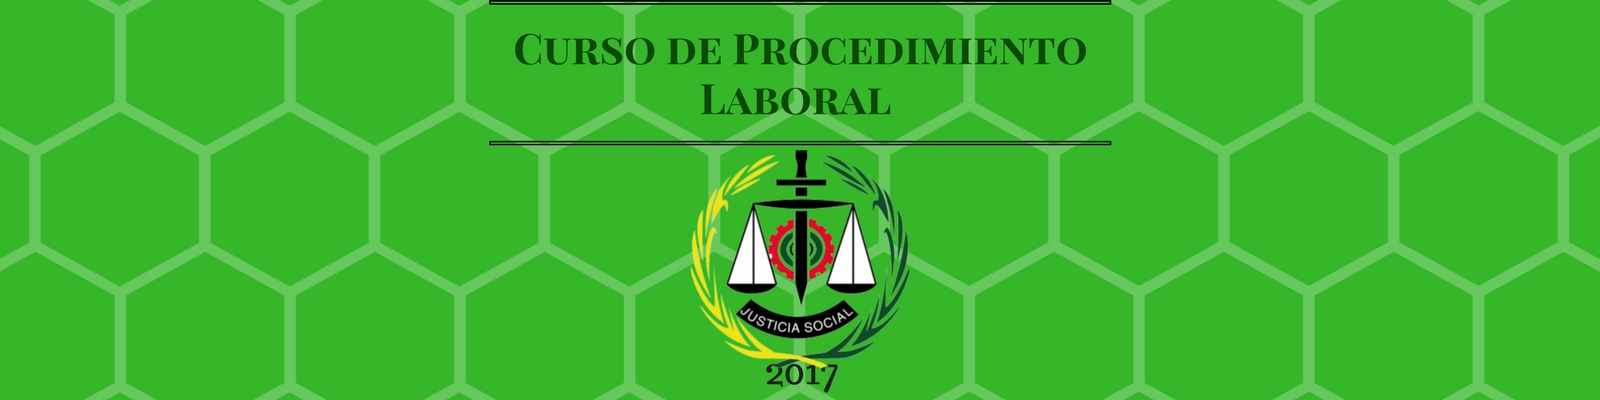 Curso de Procedimiento Laboral Año 2017